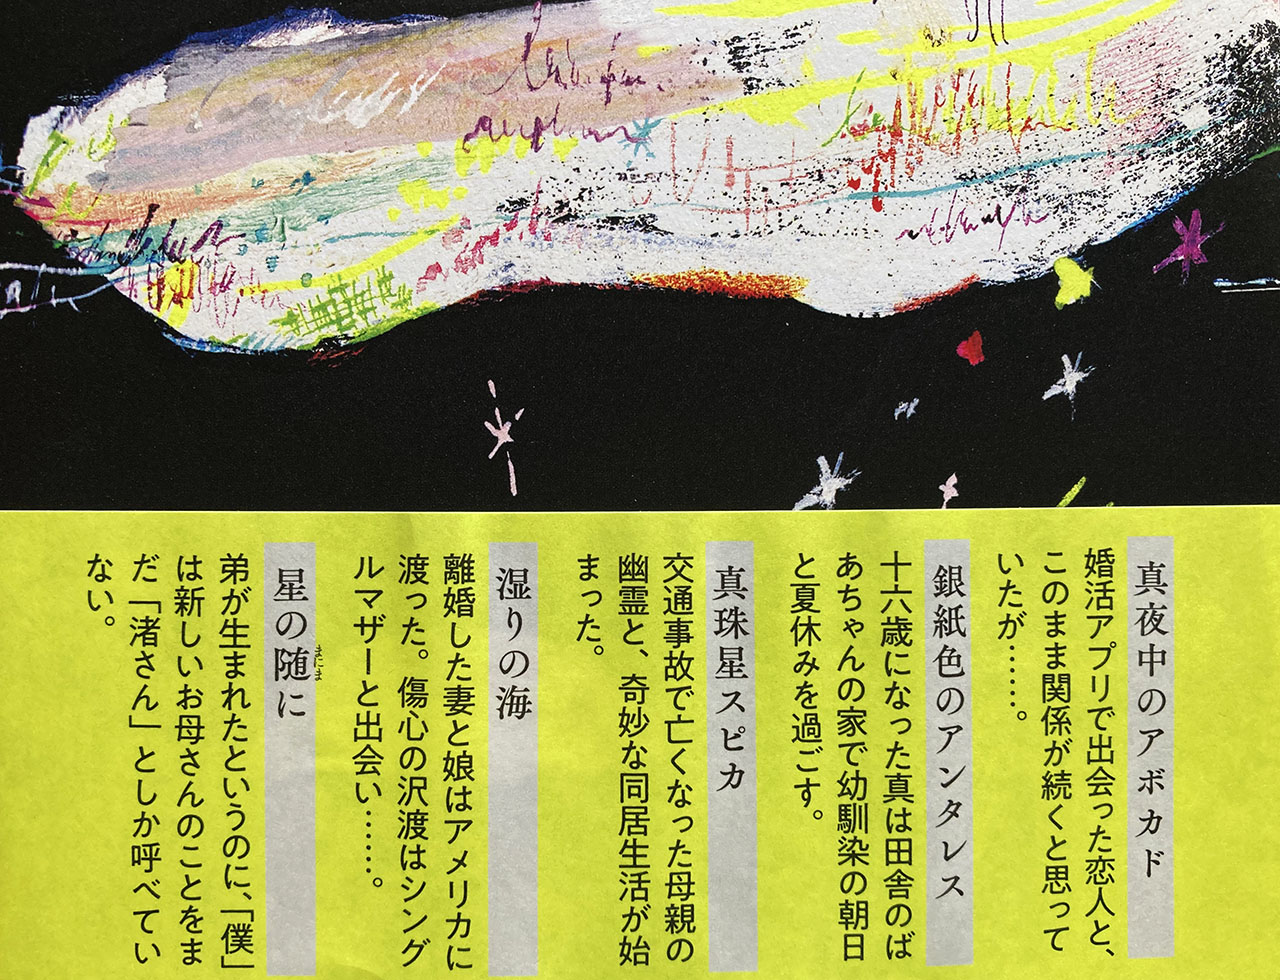 第167回 直木賞受賞作「夜に星を放つ」に注目が集まる！稲城市出身の窪美澄さんの作品がこの夏オススメな理由